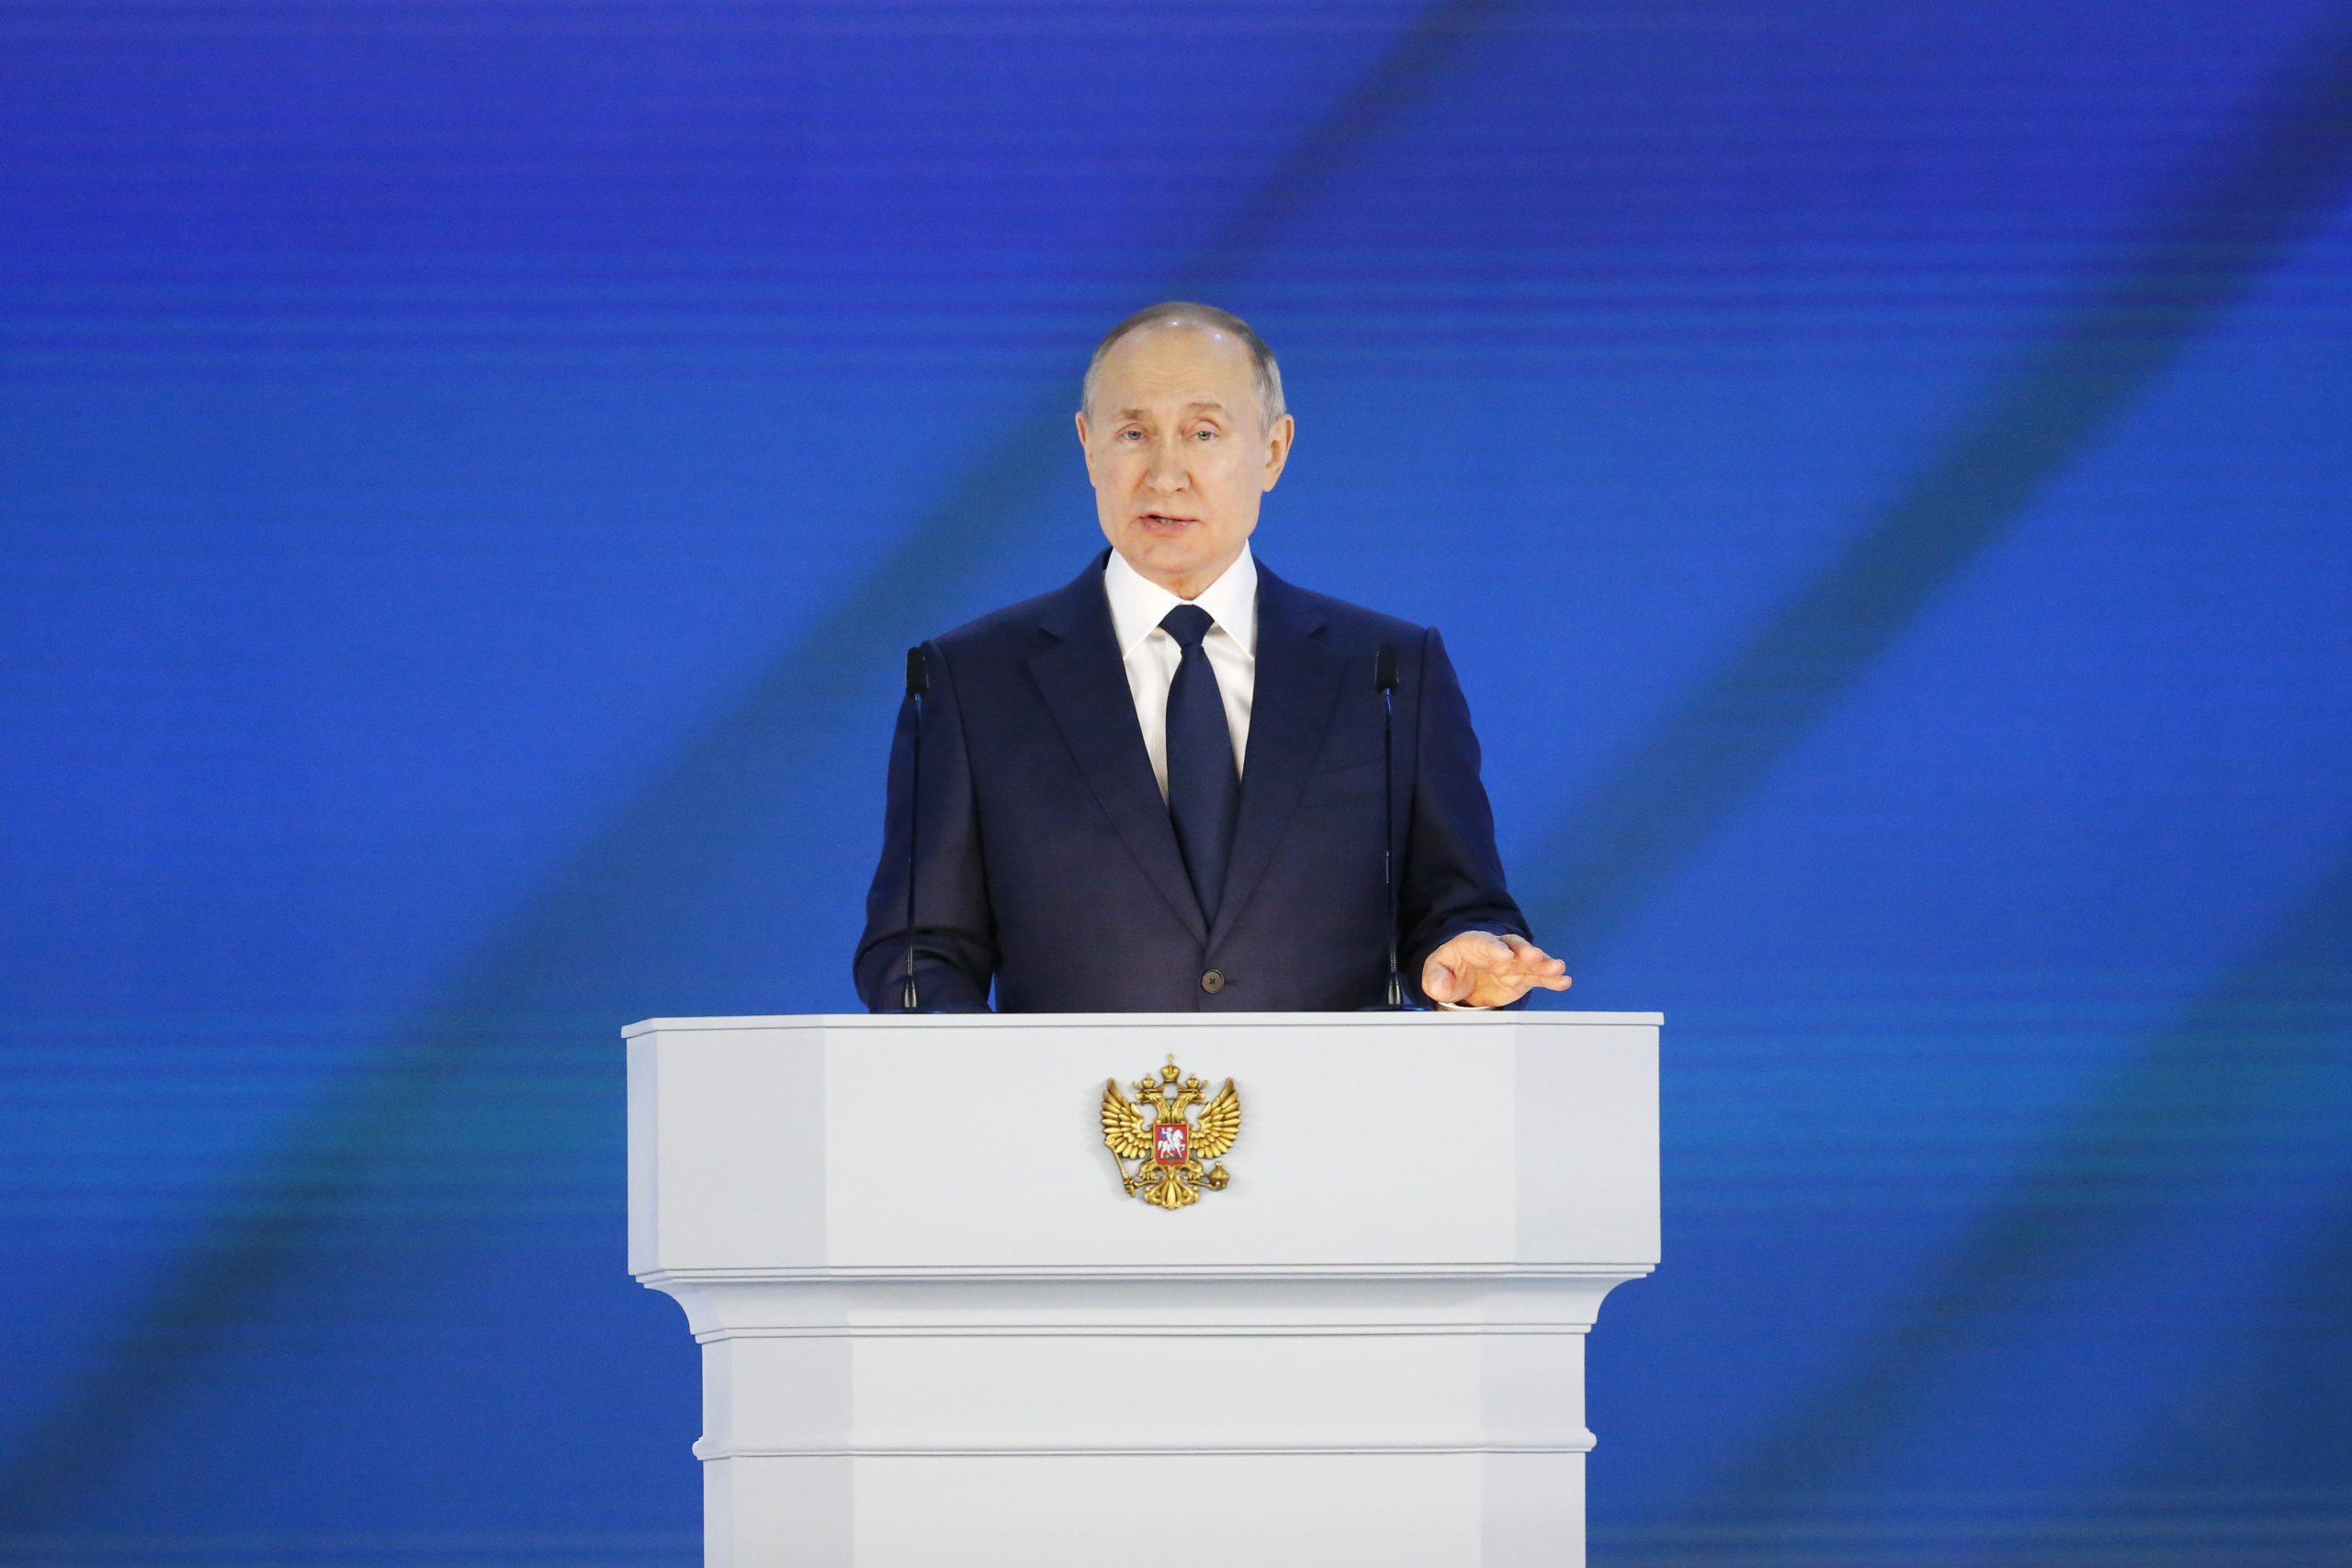 ‘Panik në Kremlin’ – Putini pritet t’i drejtohet popullit për herë të parë që nga 24 shkurti